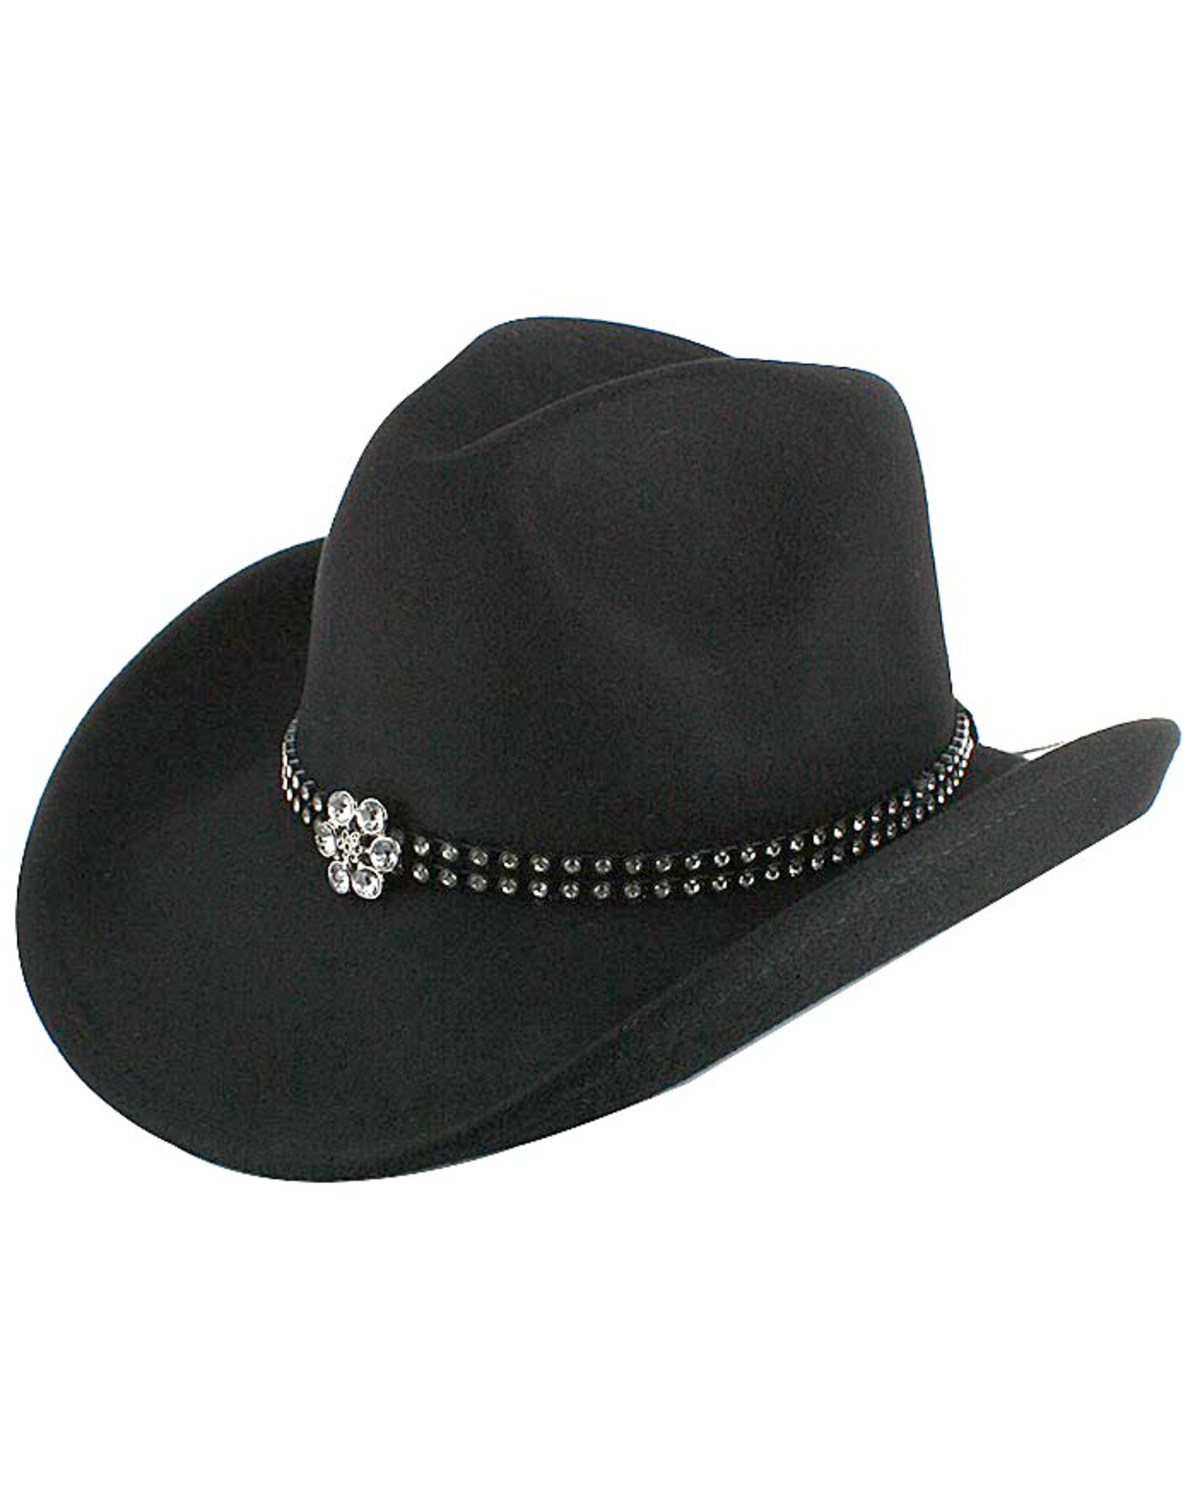 Shyanne Girls' Felt Cowboy Hat